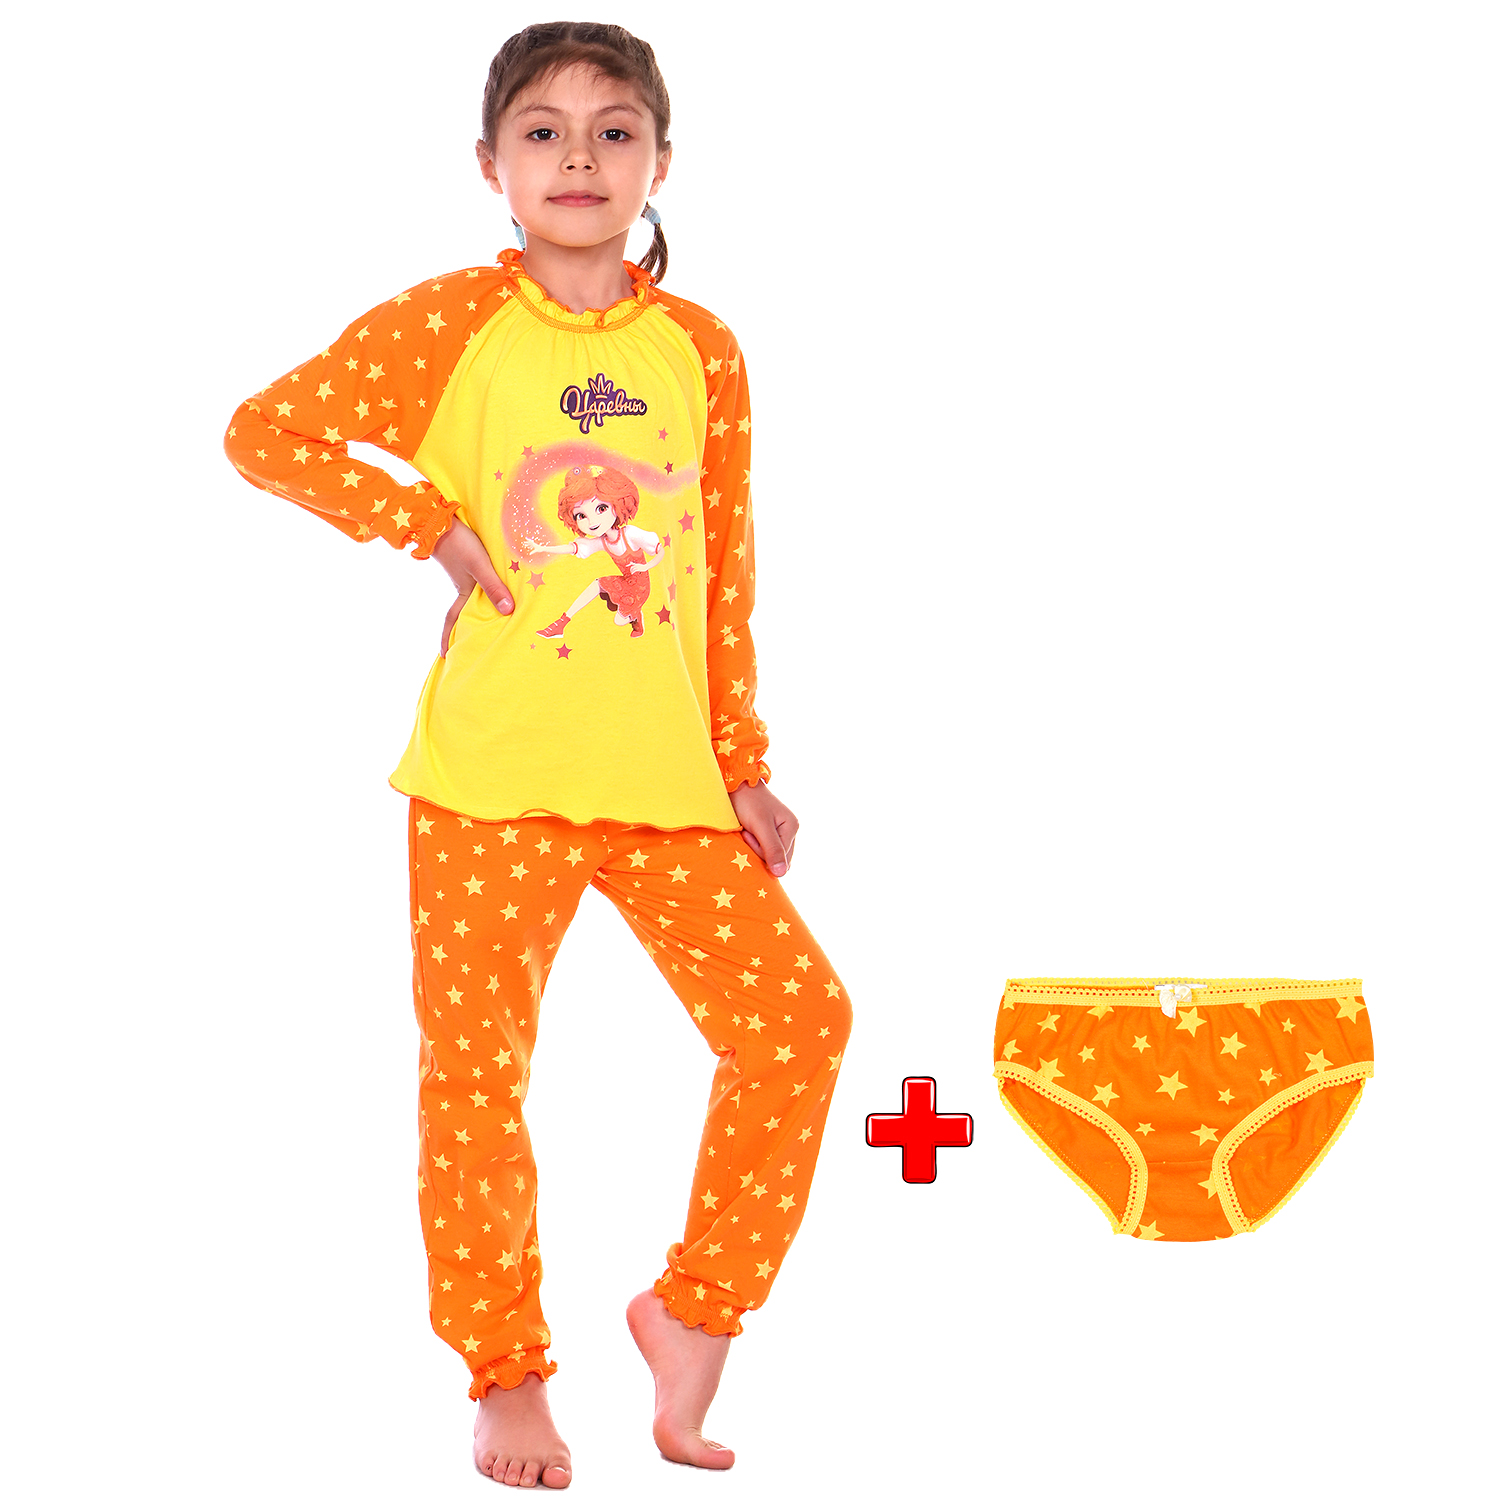 Пижама Детская Одежда S0413К/желтый_оранж - фото 2